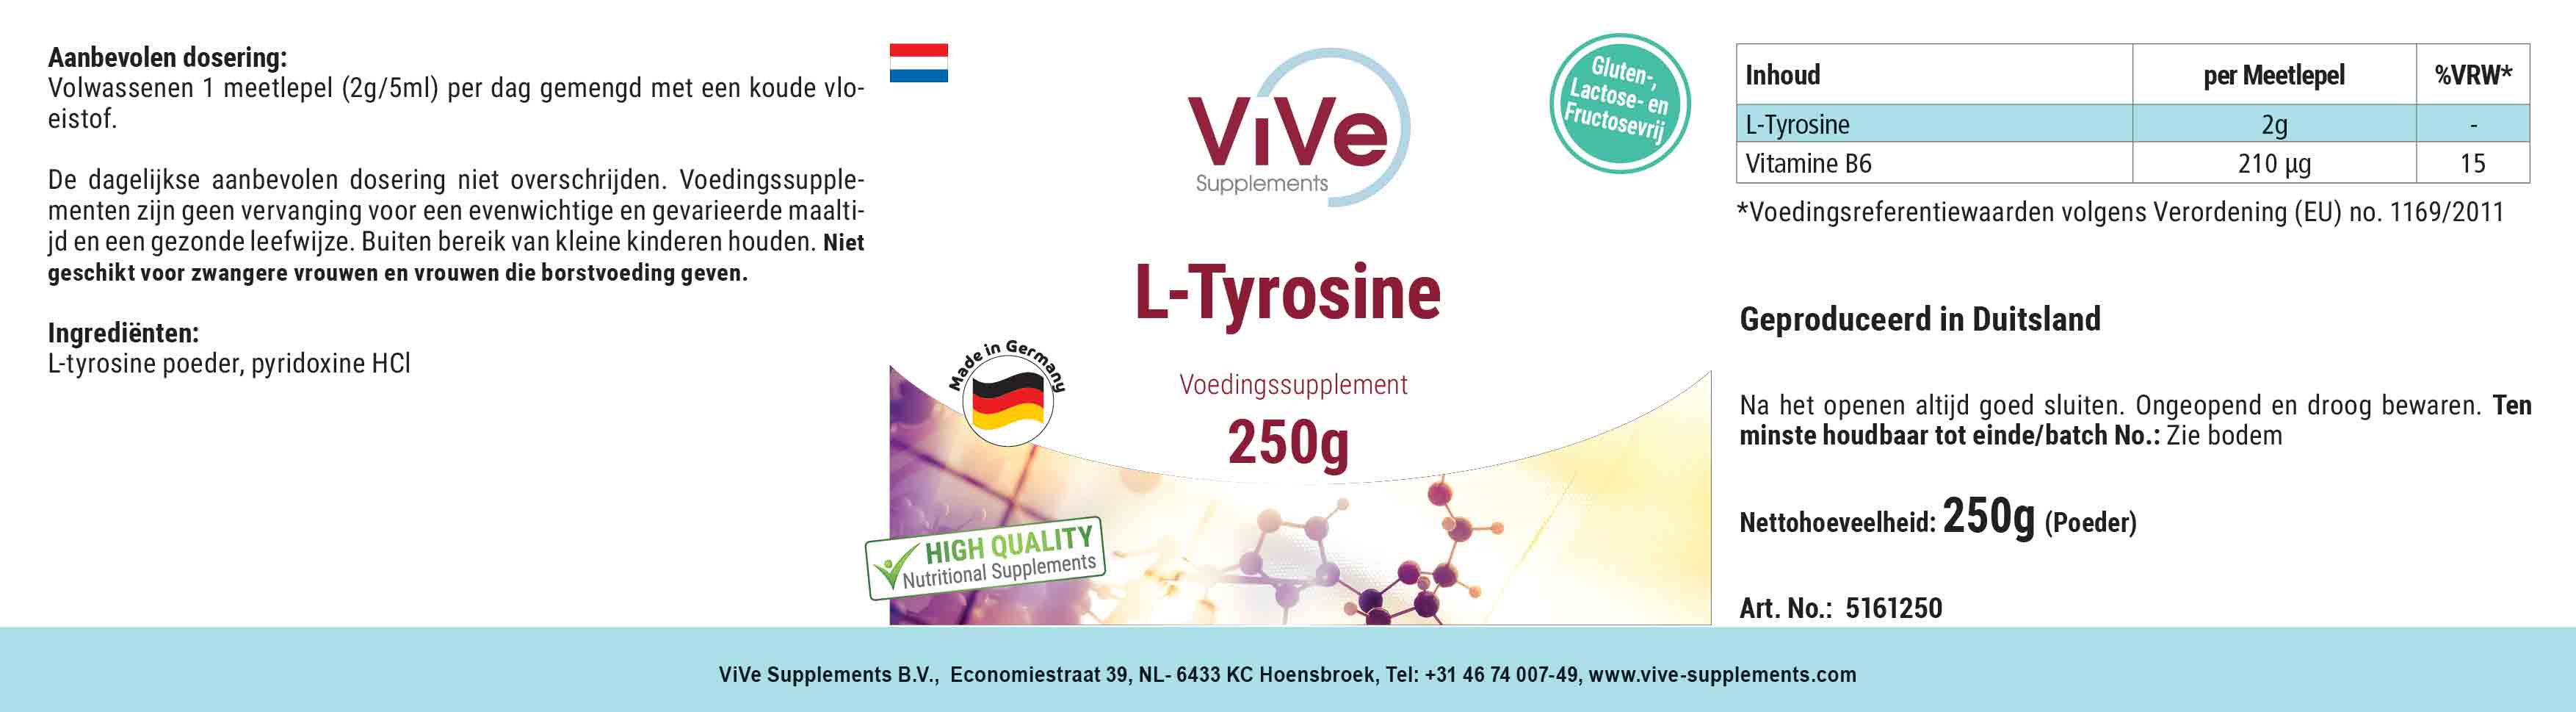 L-Tirosina en polvo 250mg + Vitamina B6